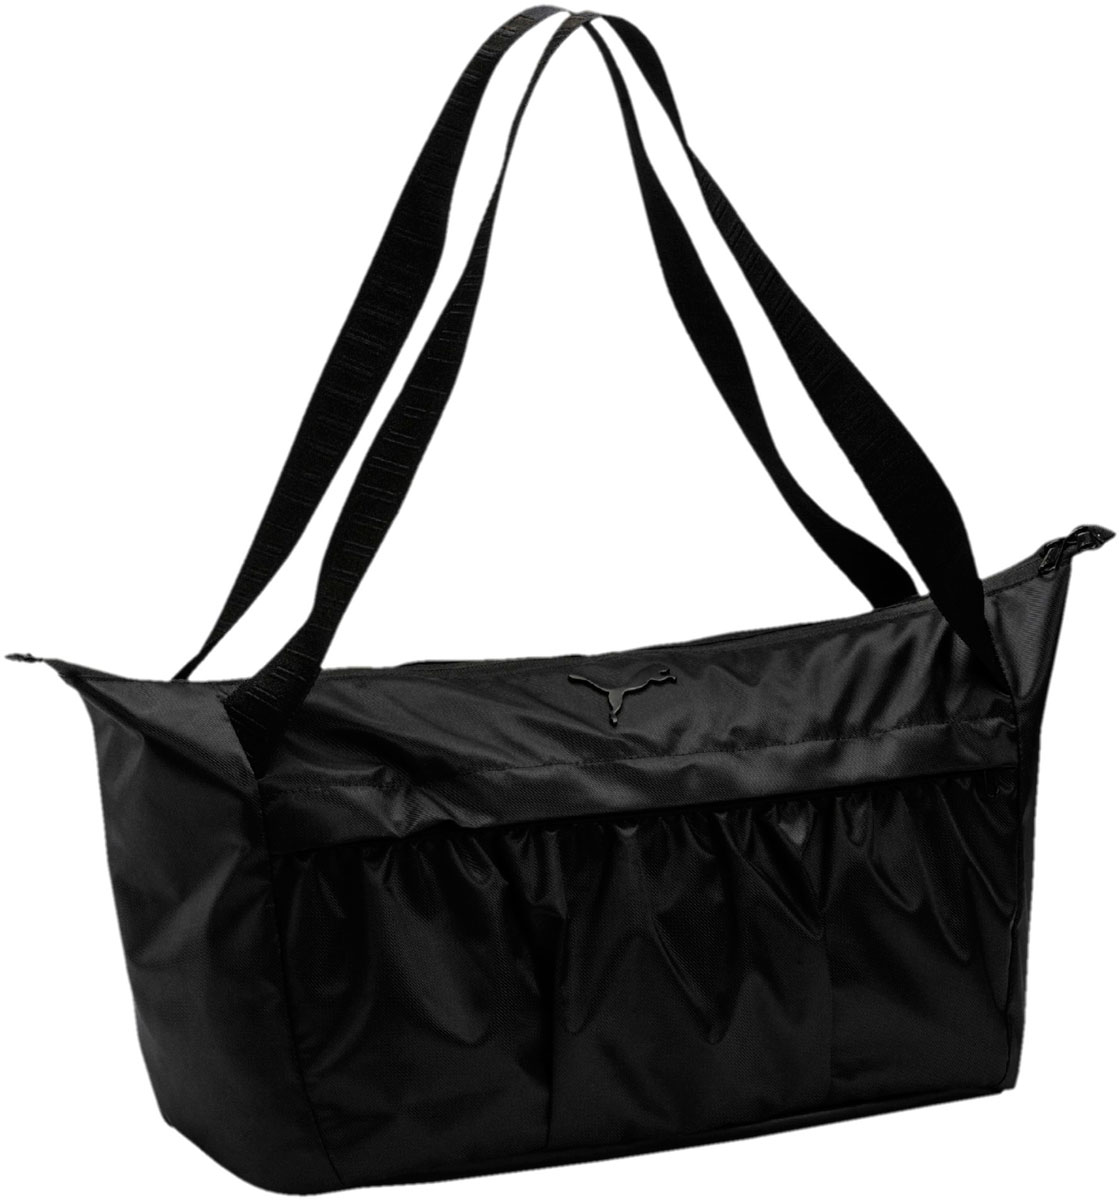 Сумка женская Puma AT Sports Bag, цвет: черный, 15 л. 07505101